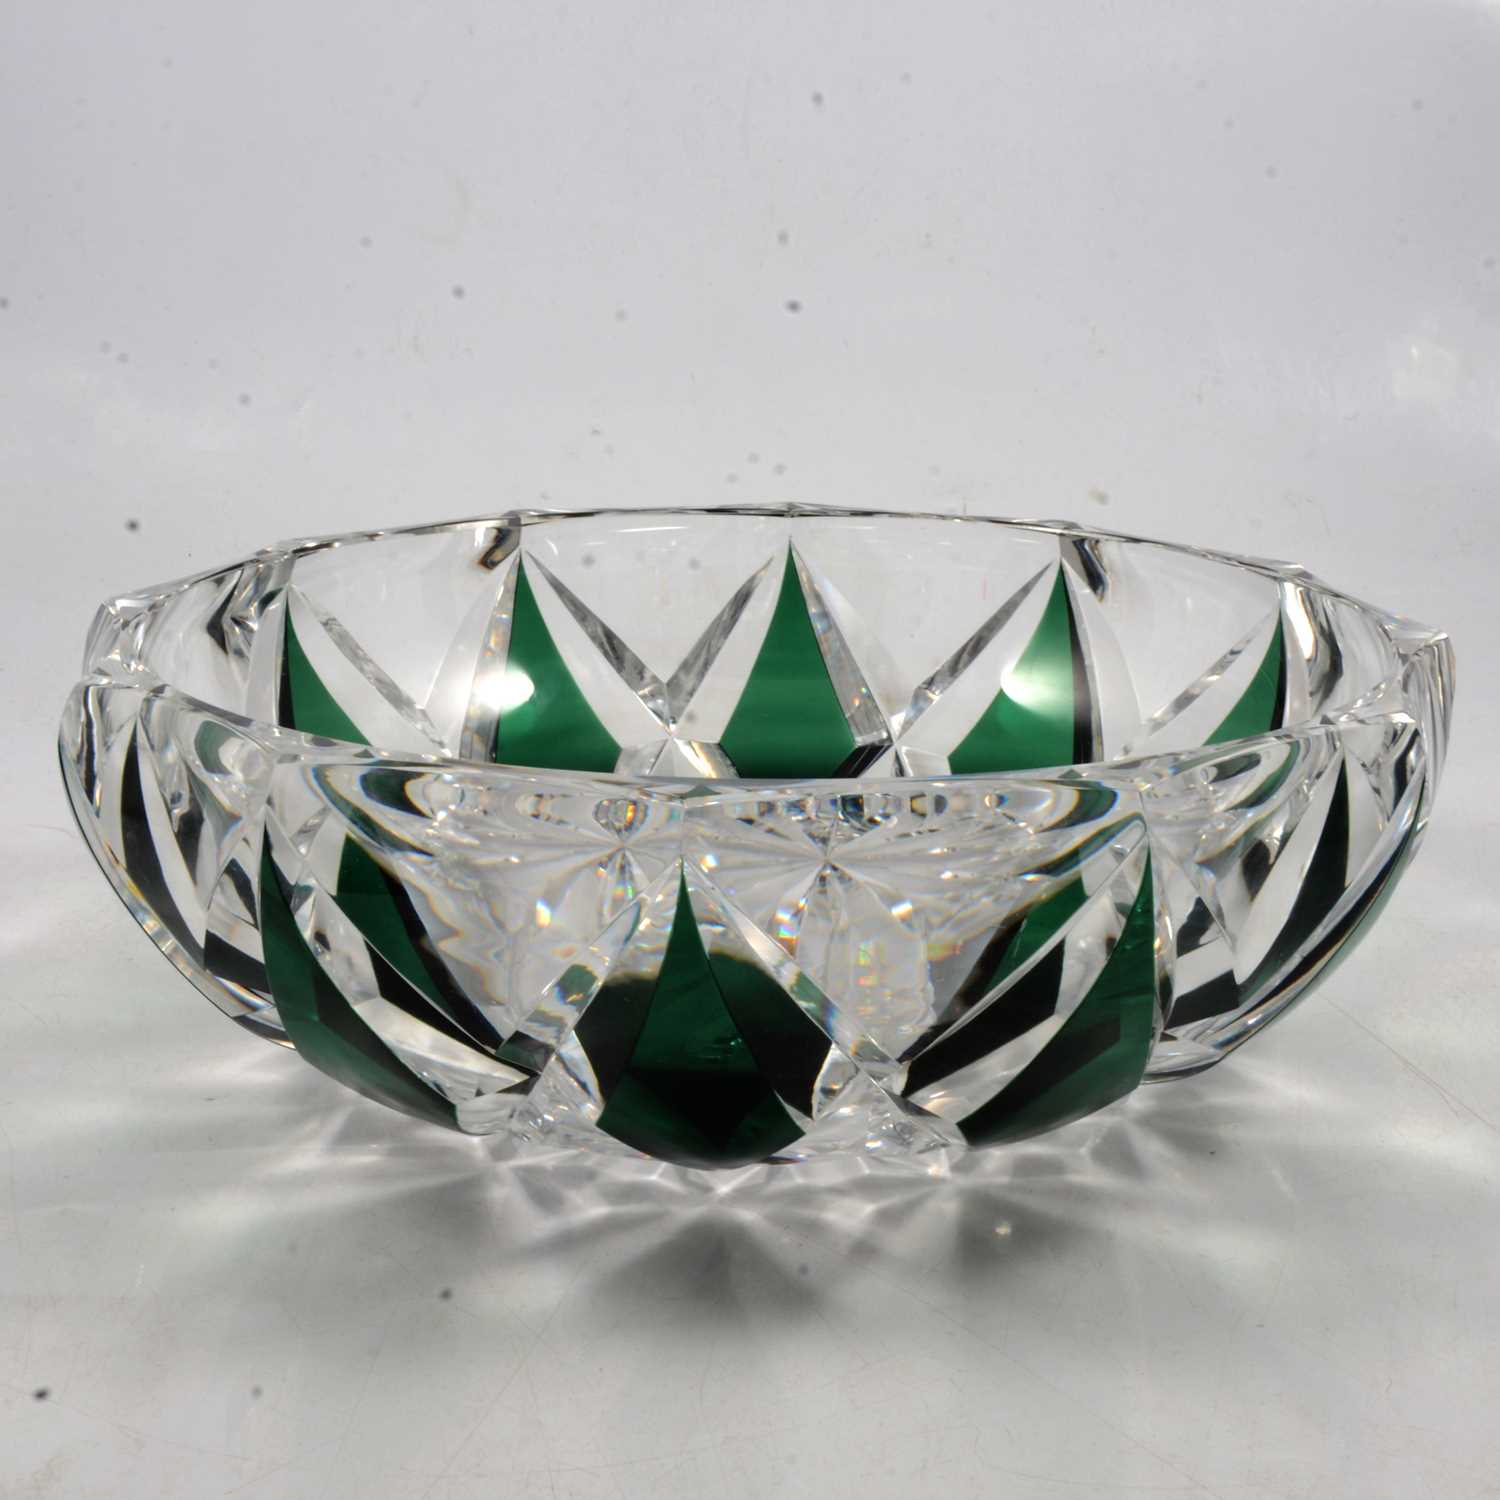 Lot 18 - Val St Lambert, an emerald green overlay glass bowl.